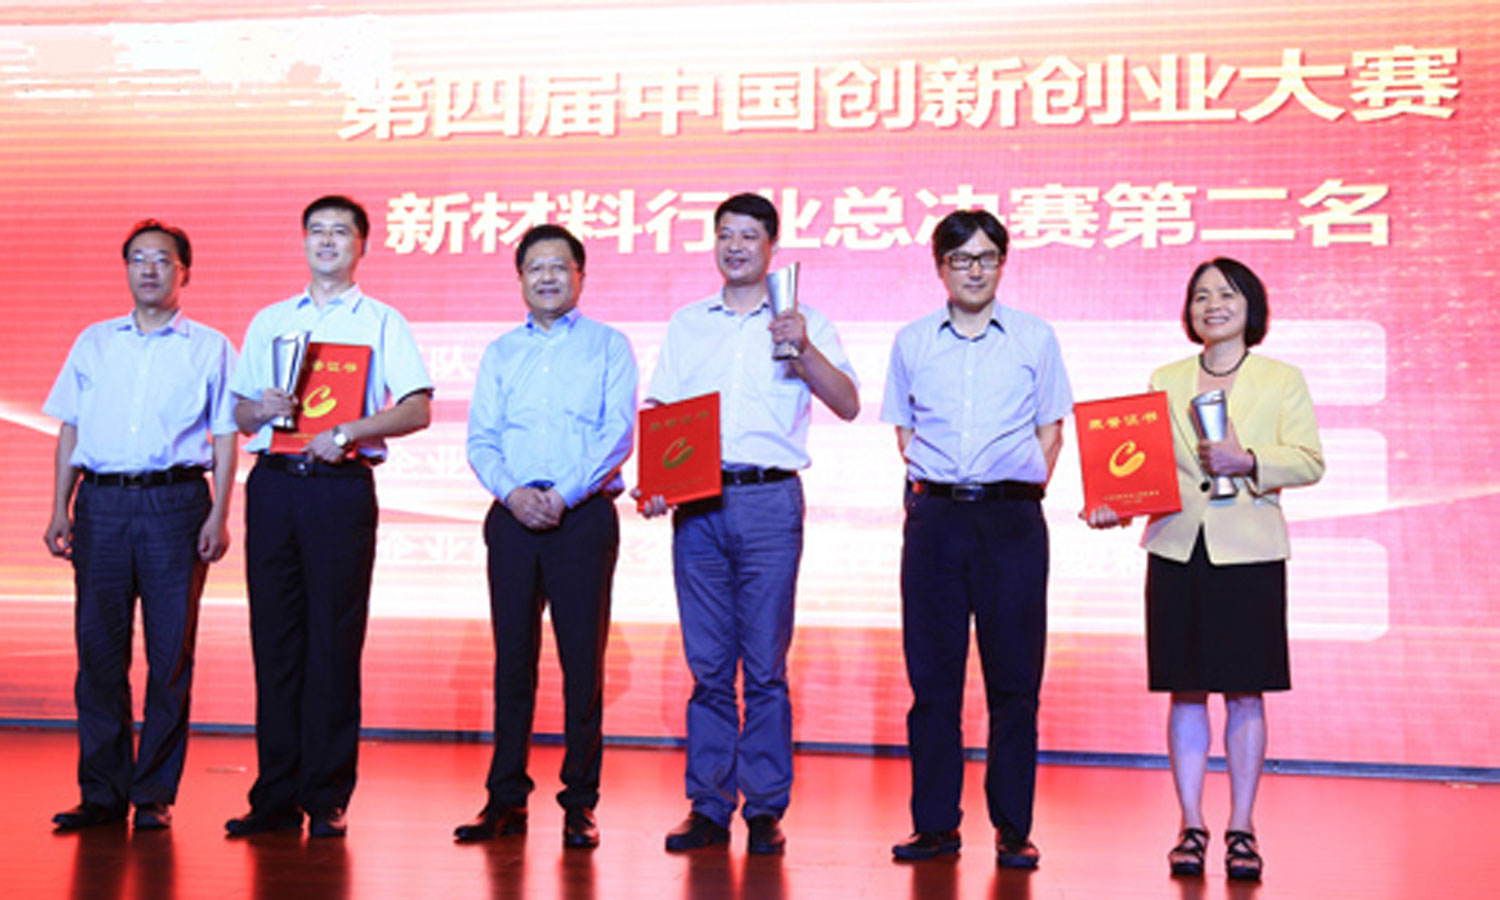 新国大苏研院美国归国创新企业家、研究员林曼华博士荣获第四届中国创新创业大赛新材料行业团队组第二名